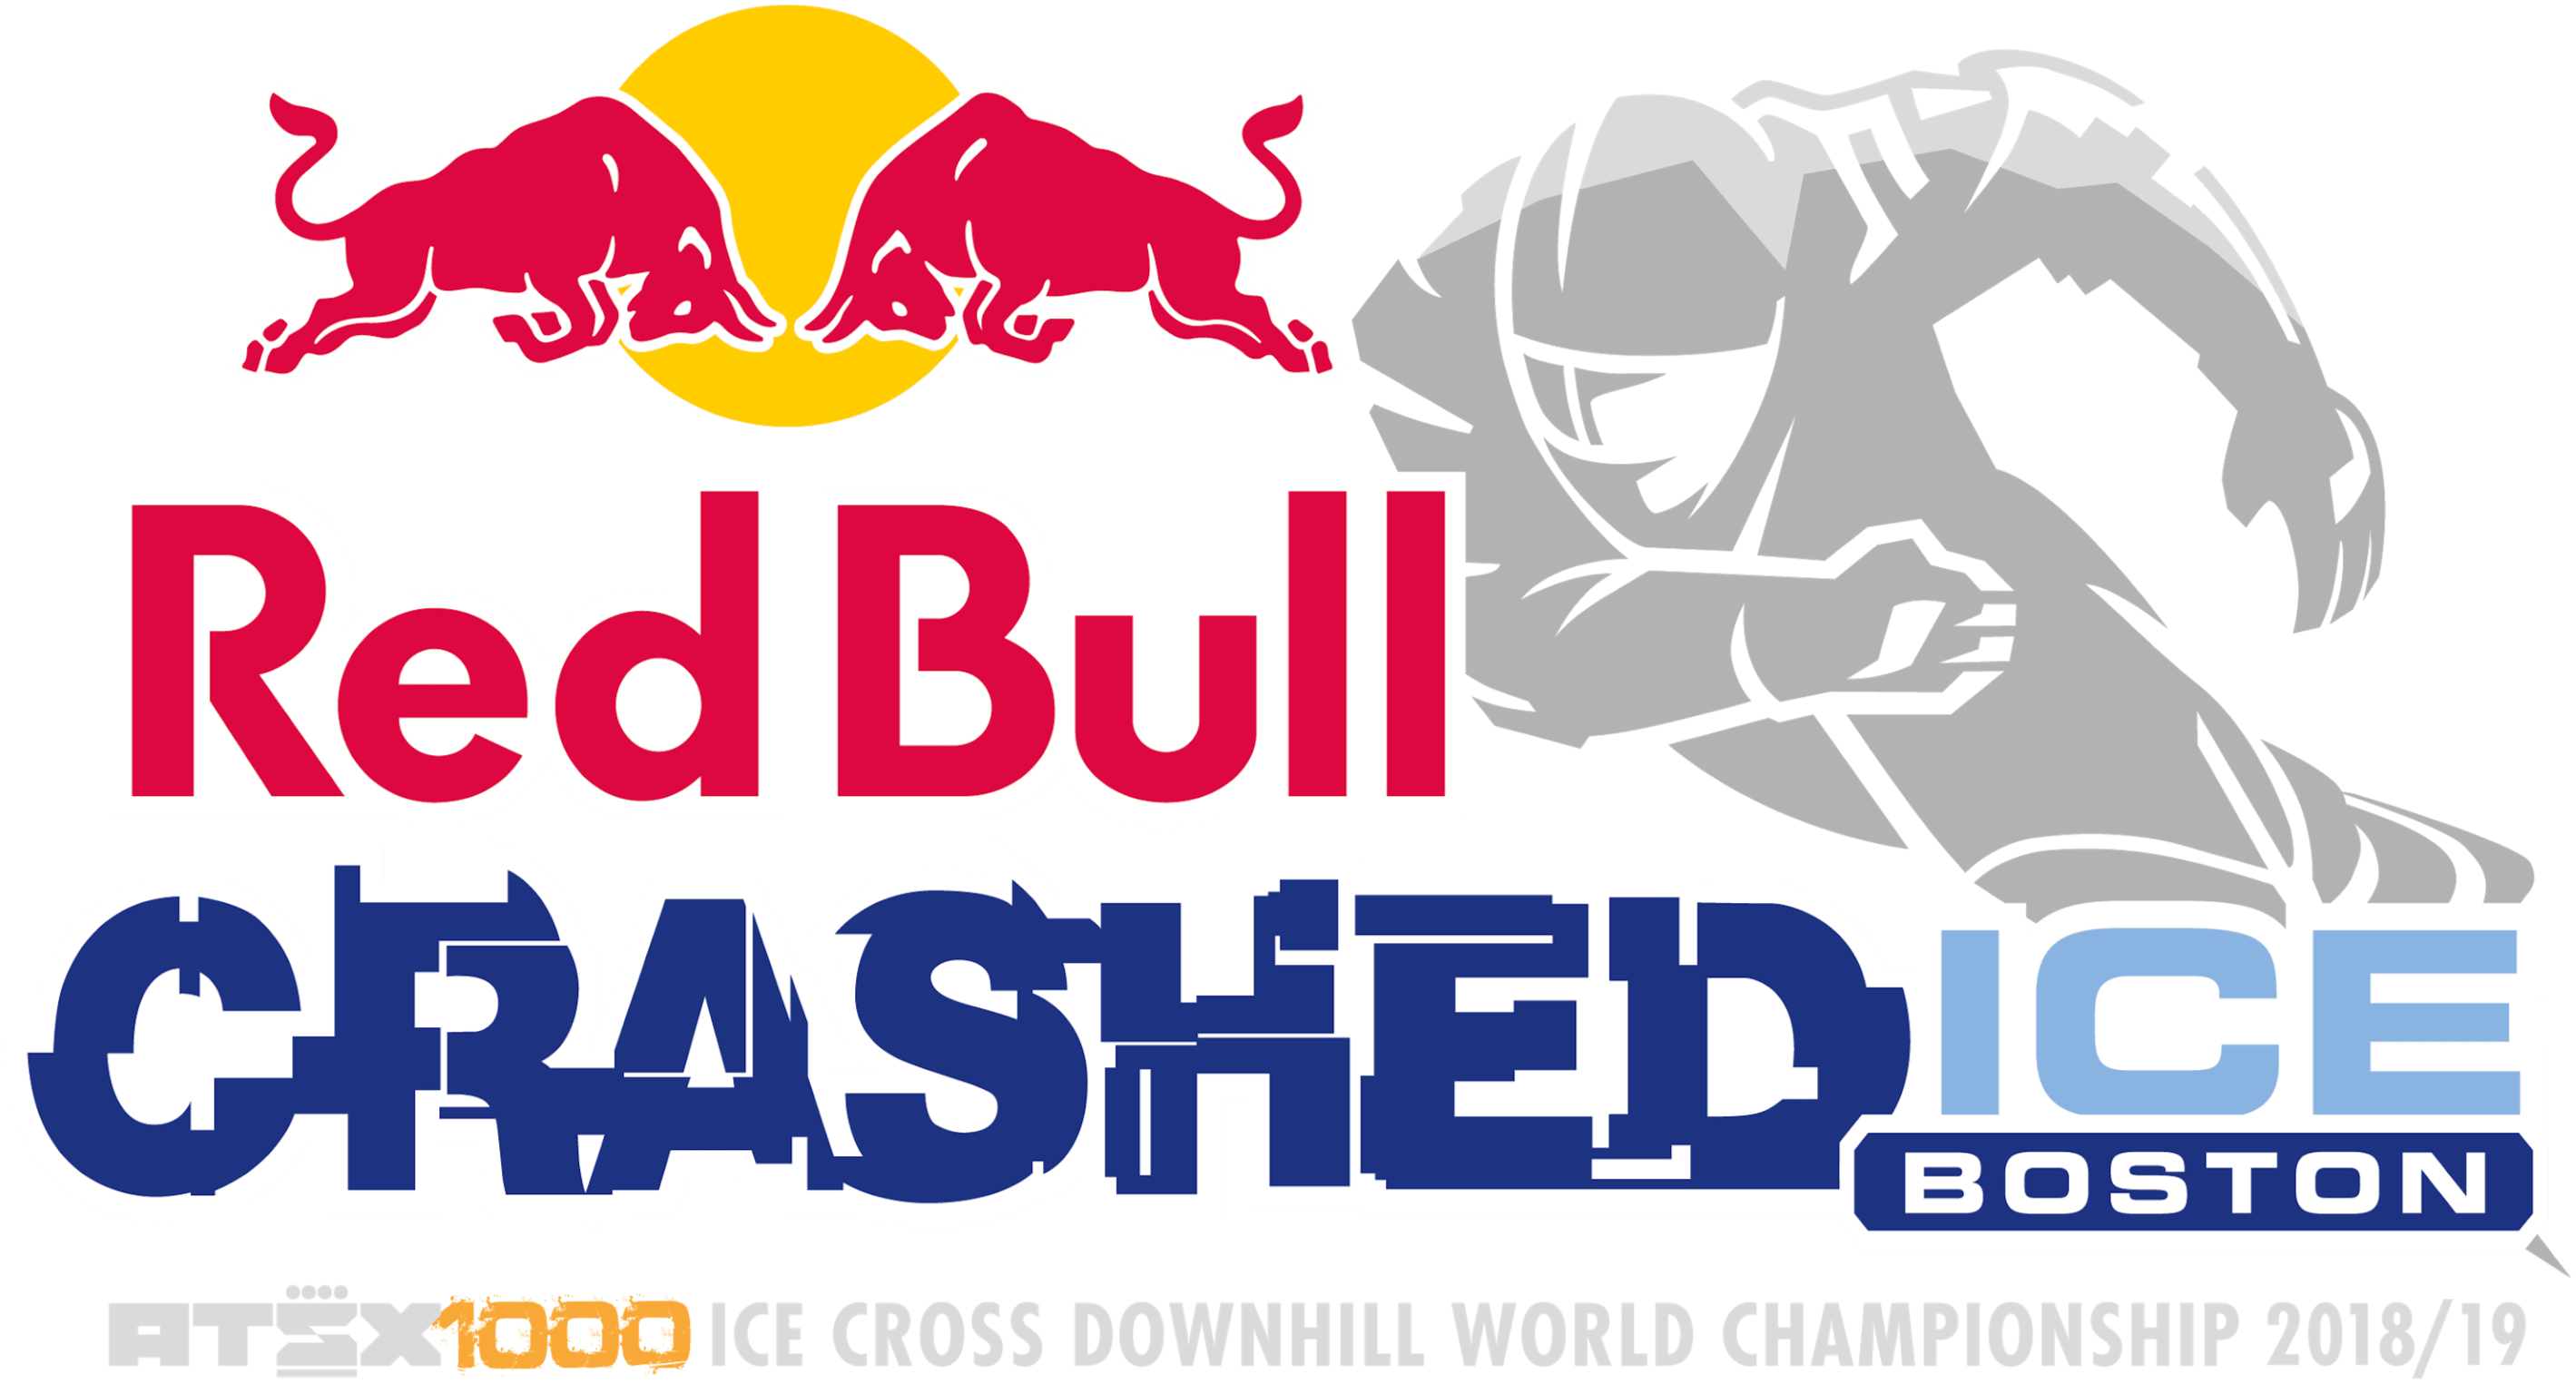 Red Bull Crashed Ice Boston logo.